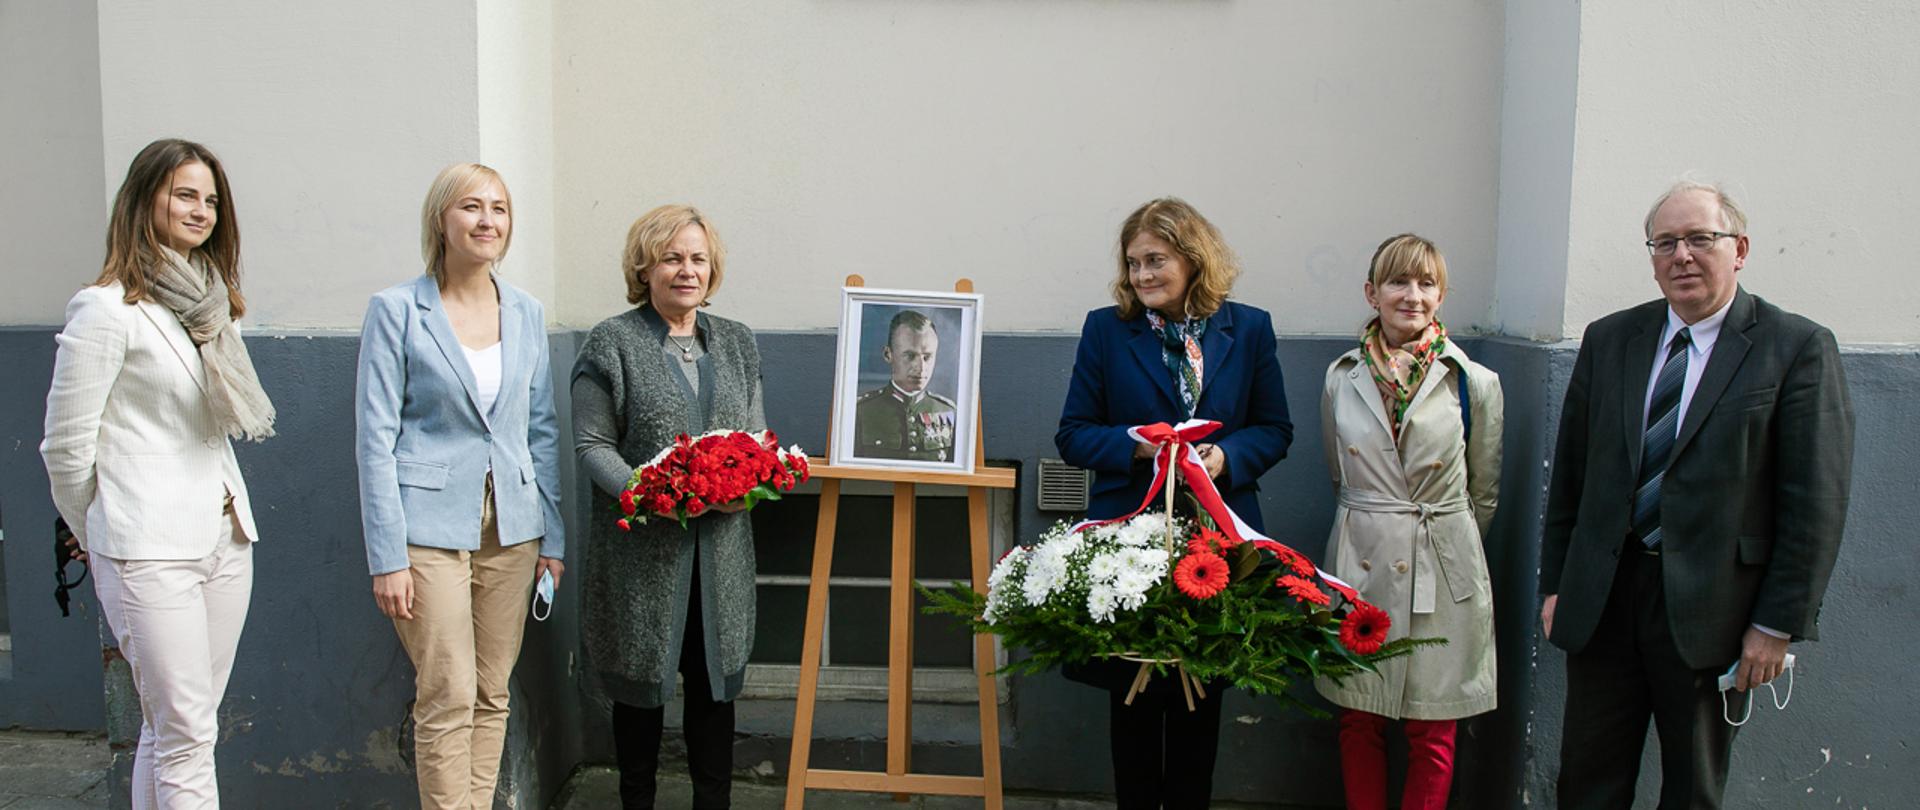 Uroczystość upamiętnienia Witolda Pileckiego w Wilnie, europosłanka Rasa Juknevičienė wraz Ambasador Urszulą Doroszewską składają kwiaty przy portrecie Witolda Pileckiego. 